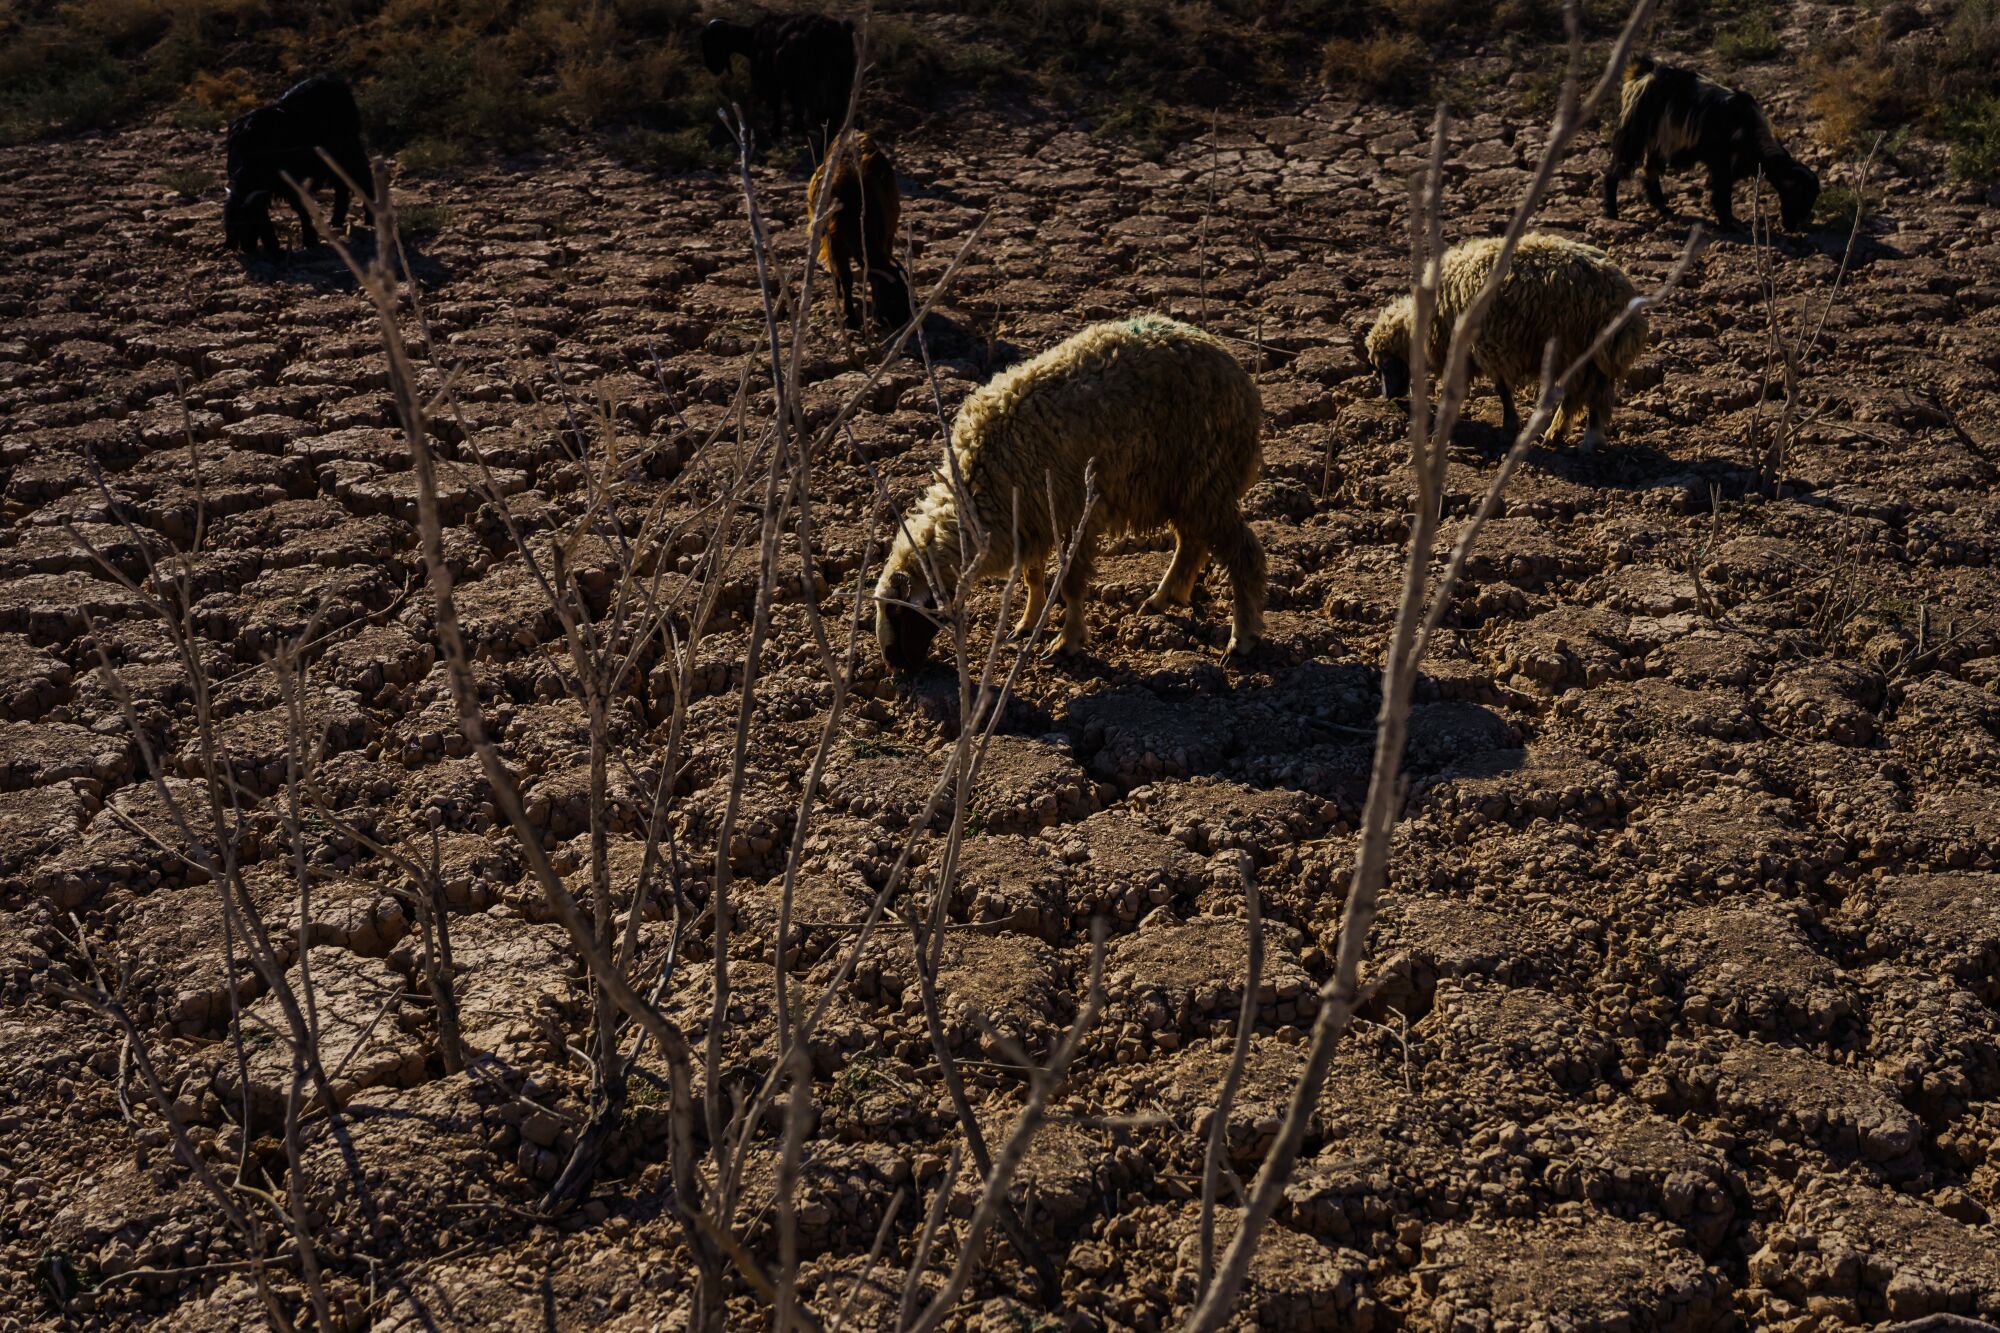 Scrawny sheep graze amid the cracked earth 